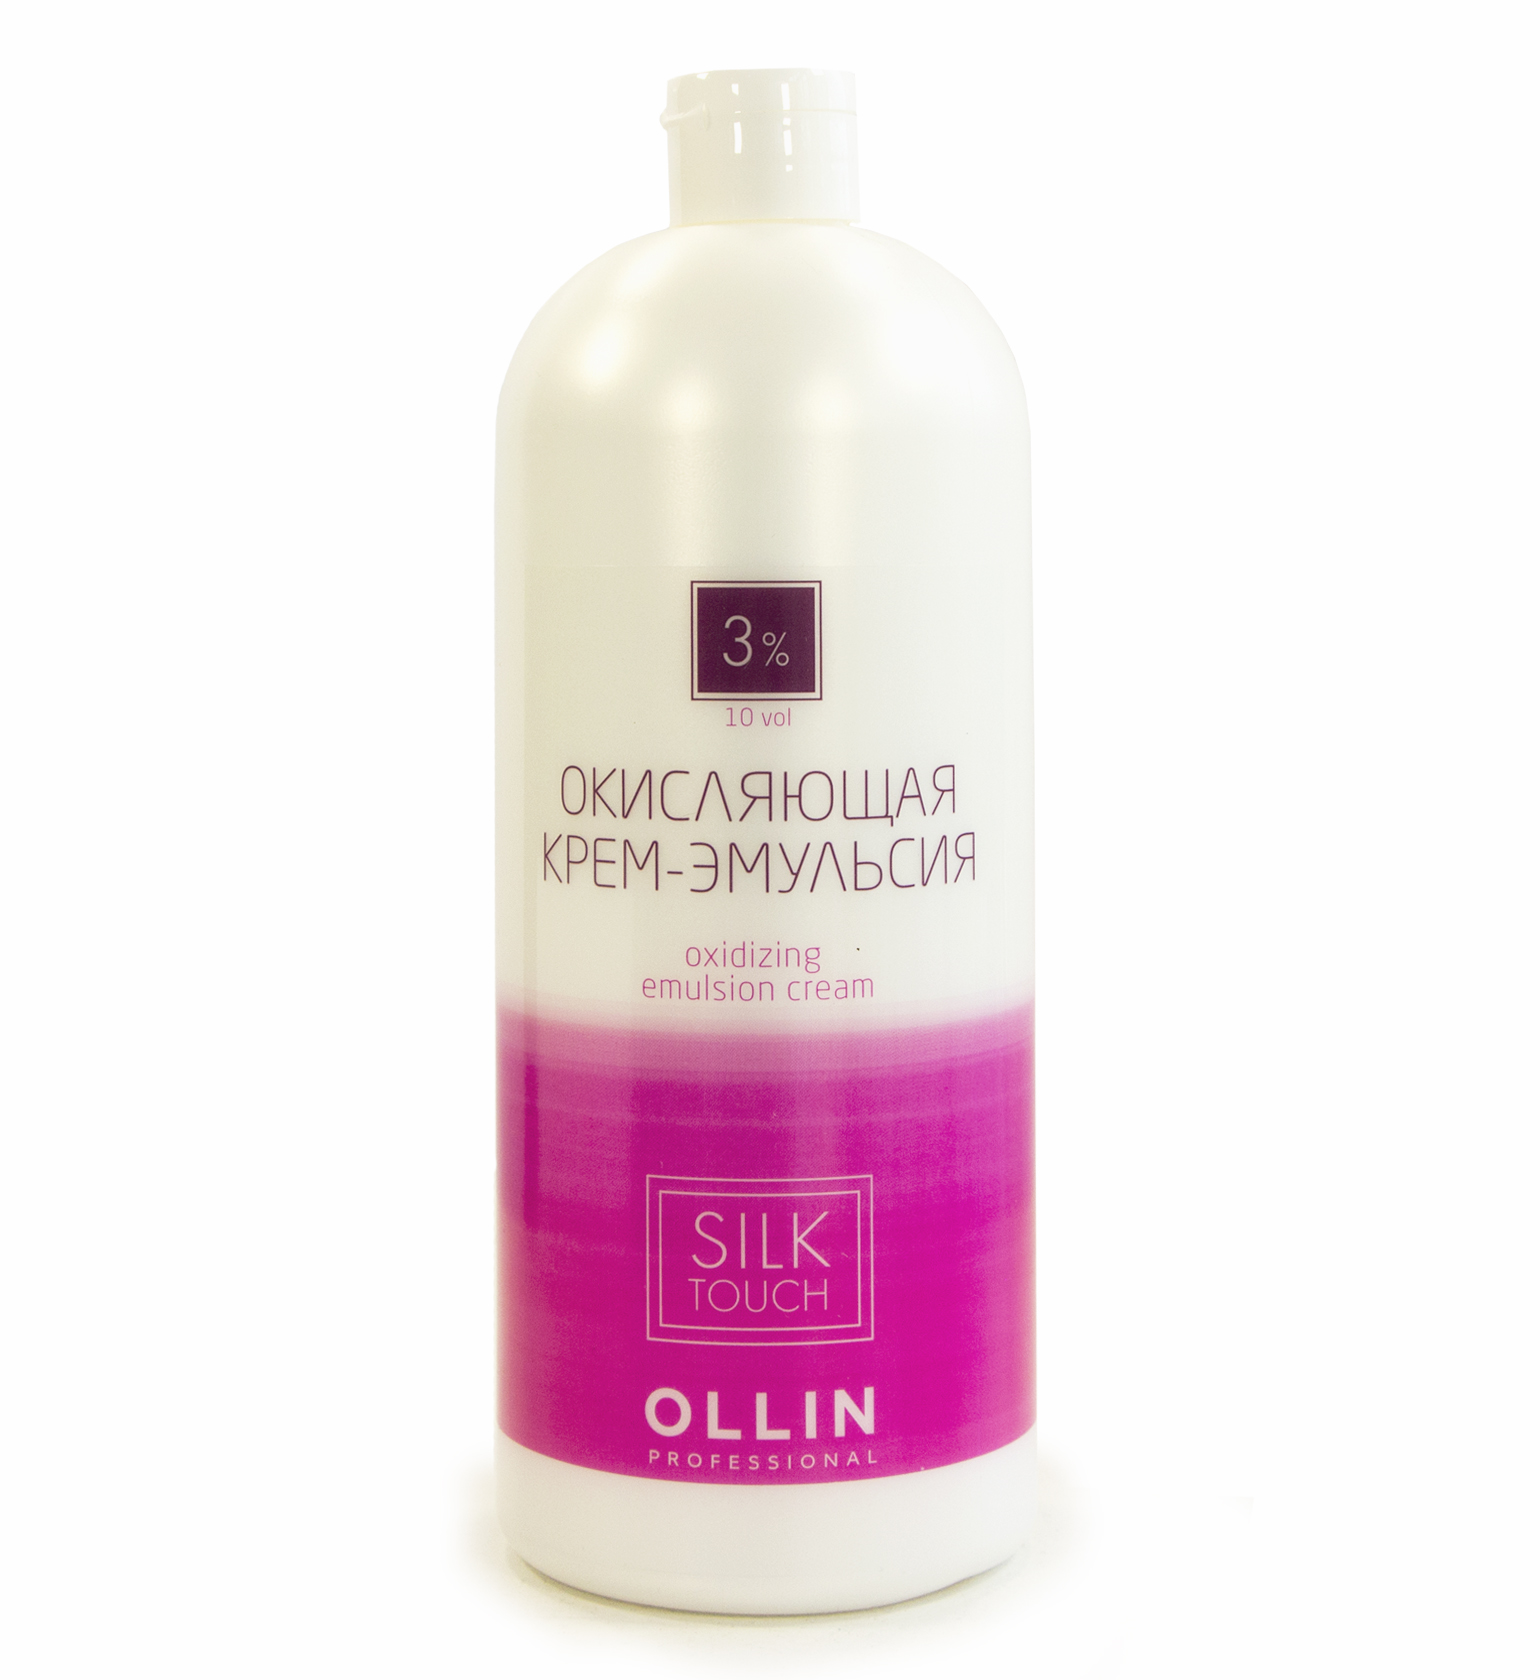 фото OLLIN silk touch    3% 10vol. Окисляющая крем-эмульсия 1000 мл/ Oxidizing Emulsion cream, 729032 